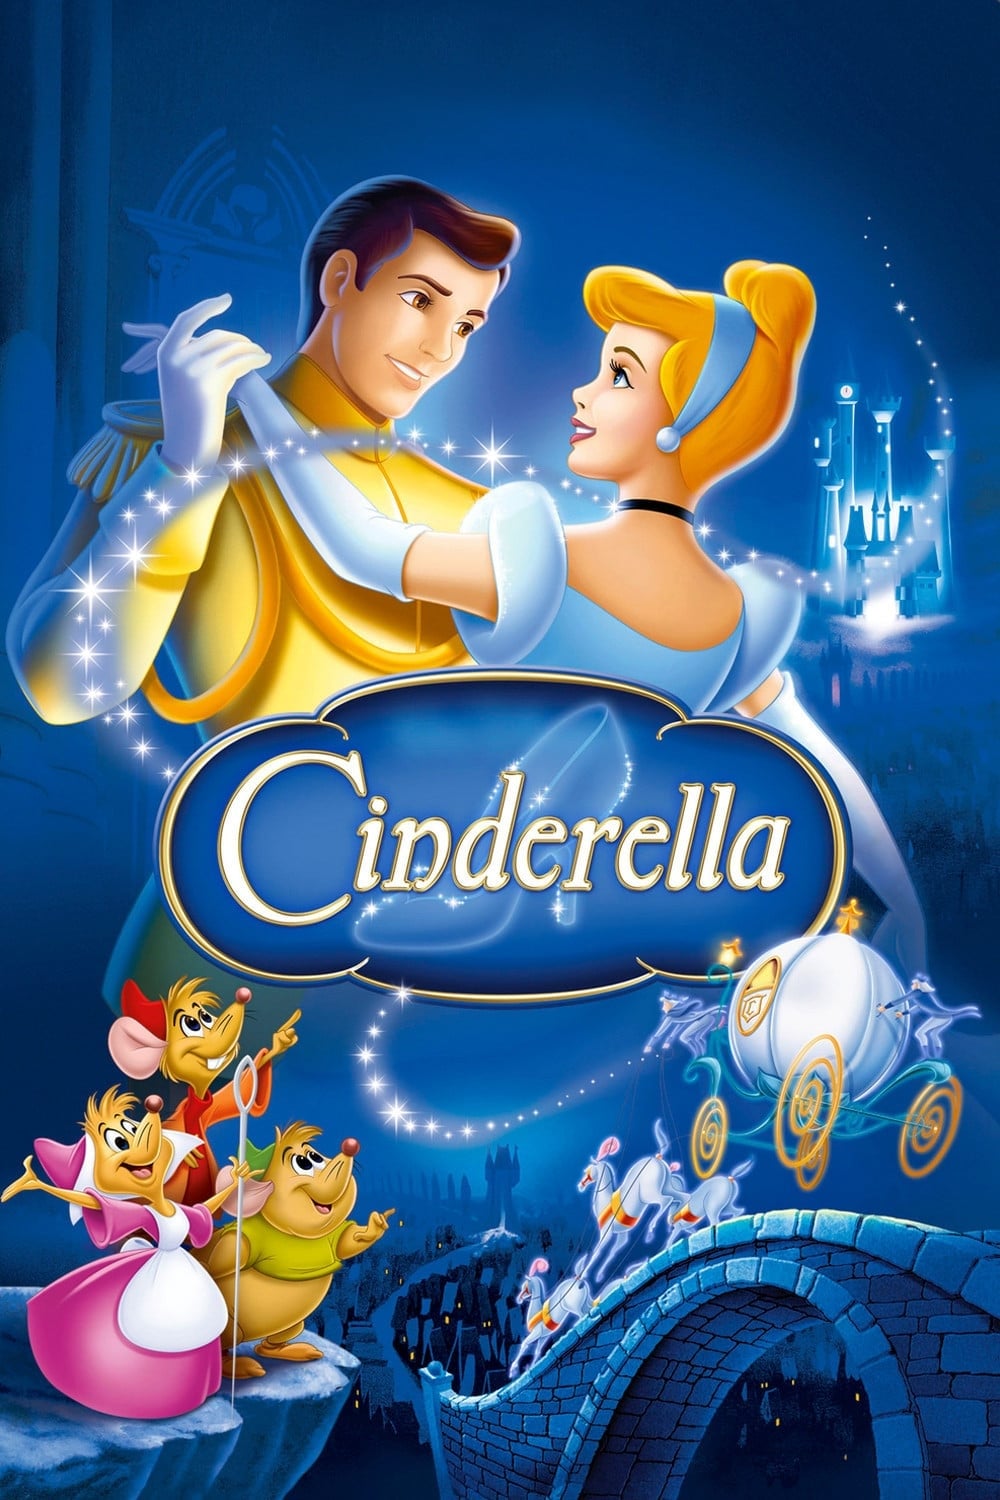 Cinderella (1950) Download